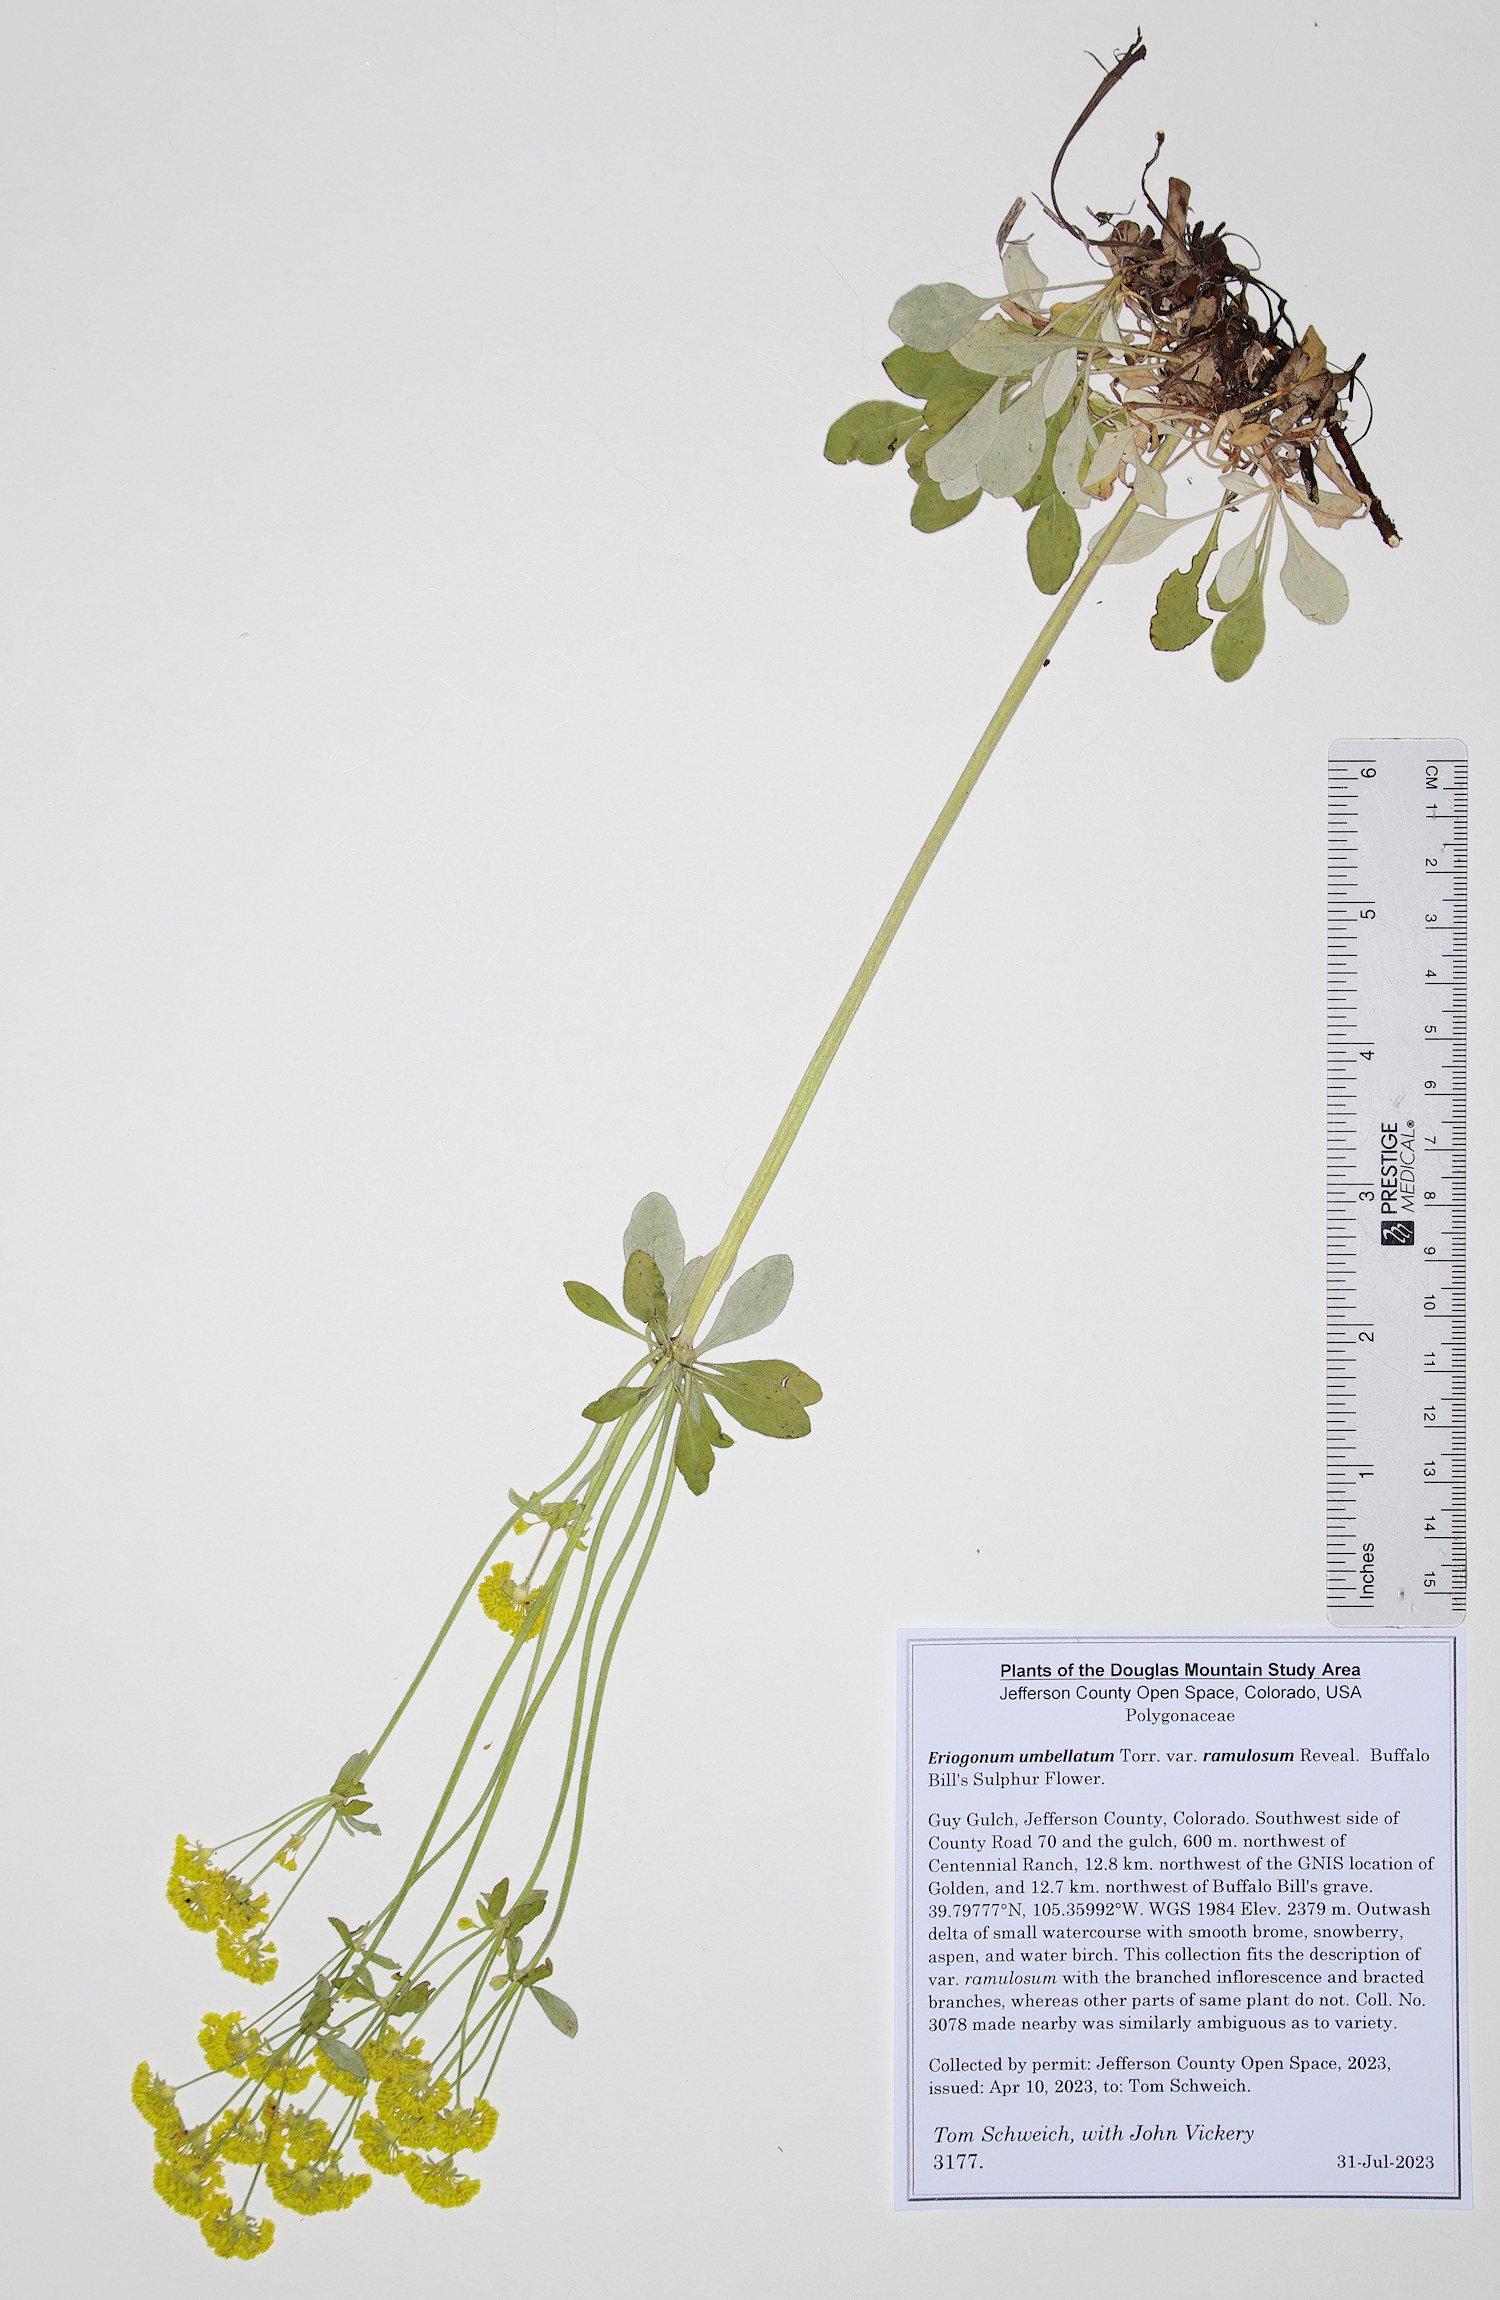 Polygonaceae Eriogonum umbellatum ramulosum